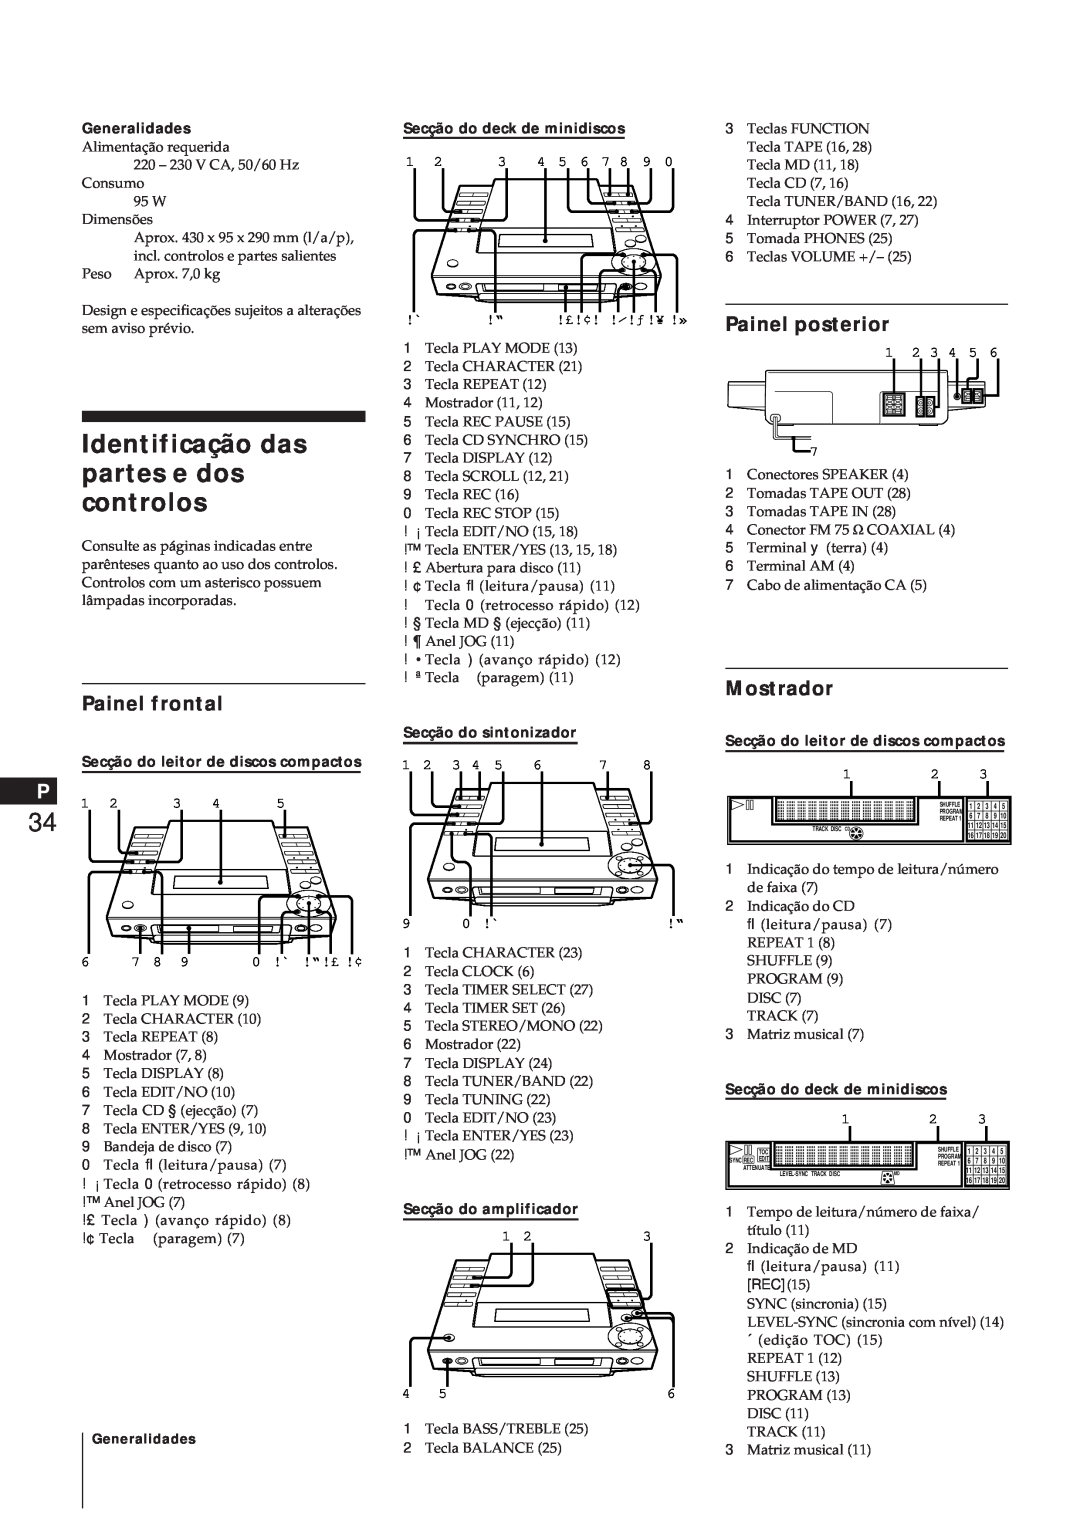 Sony MJ-L1A manual Identificação das partes e dos controlos, Painel posterior, Mostrador, Painel frontal, Generalidades 